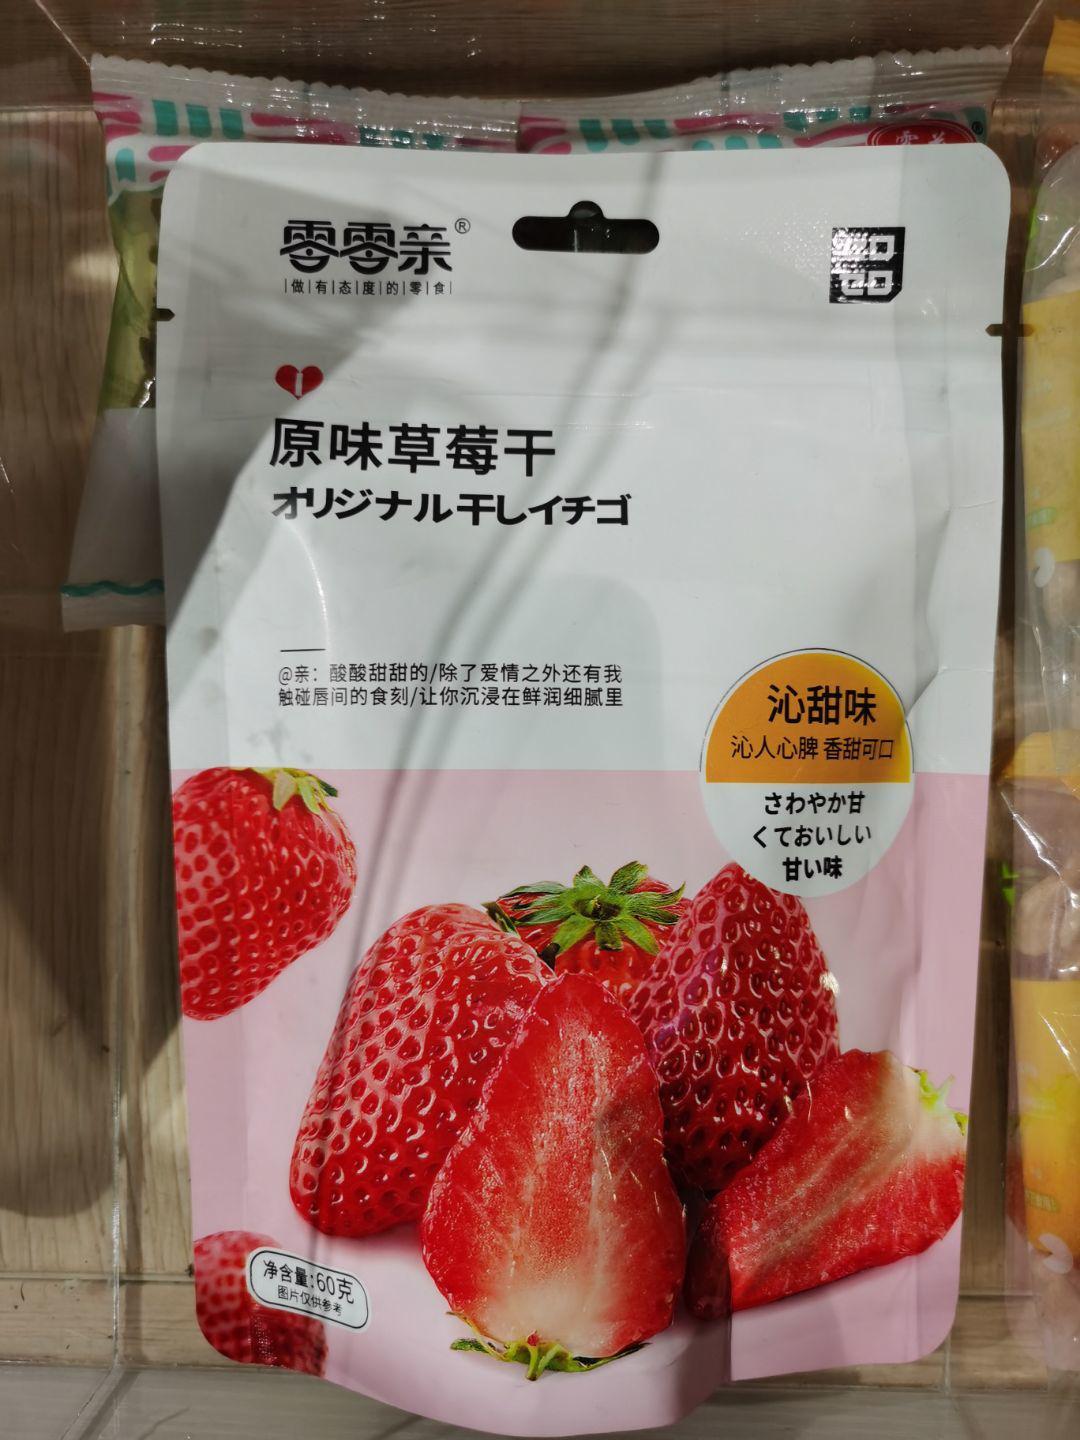 084 fruits Original Flavor Strawberry Dried